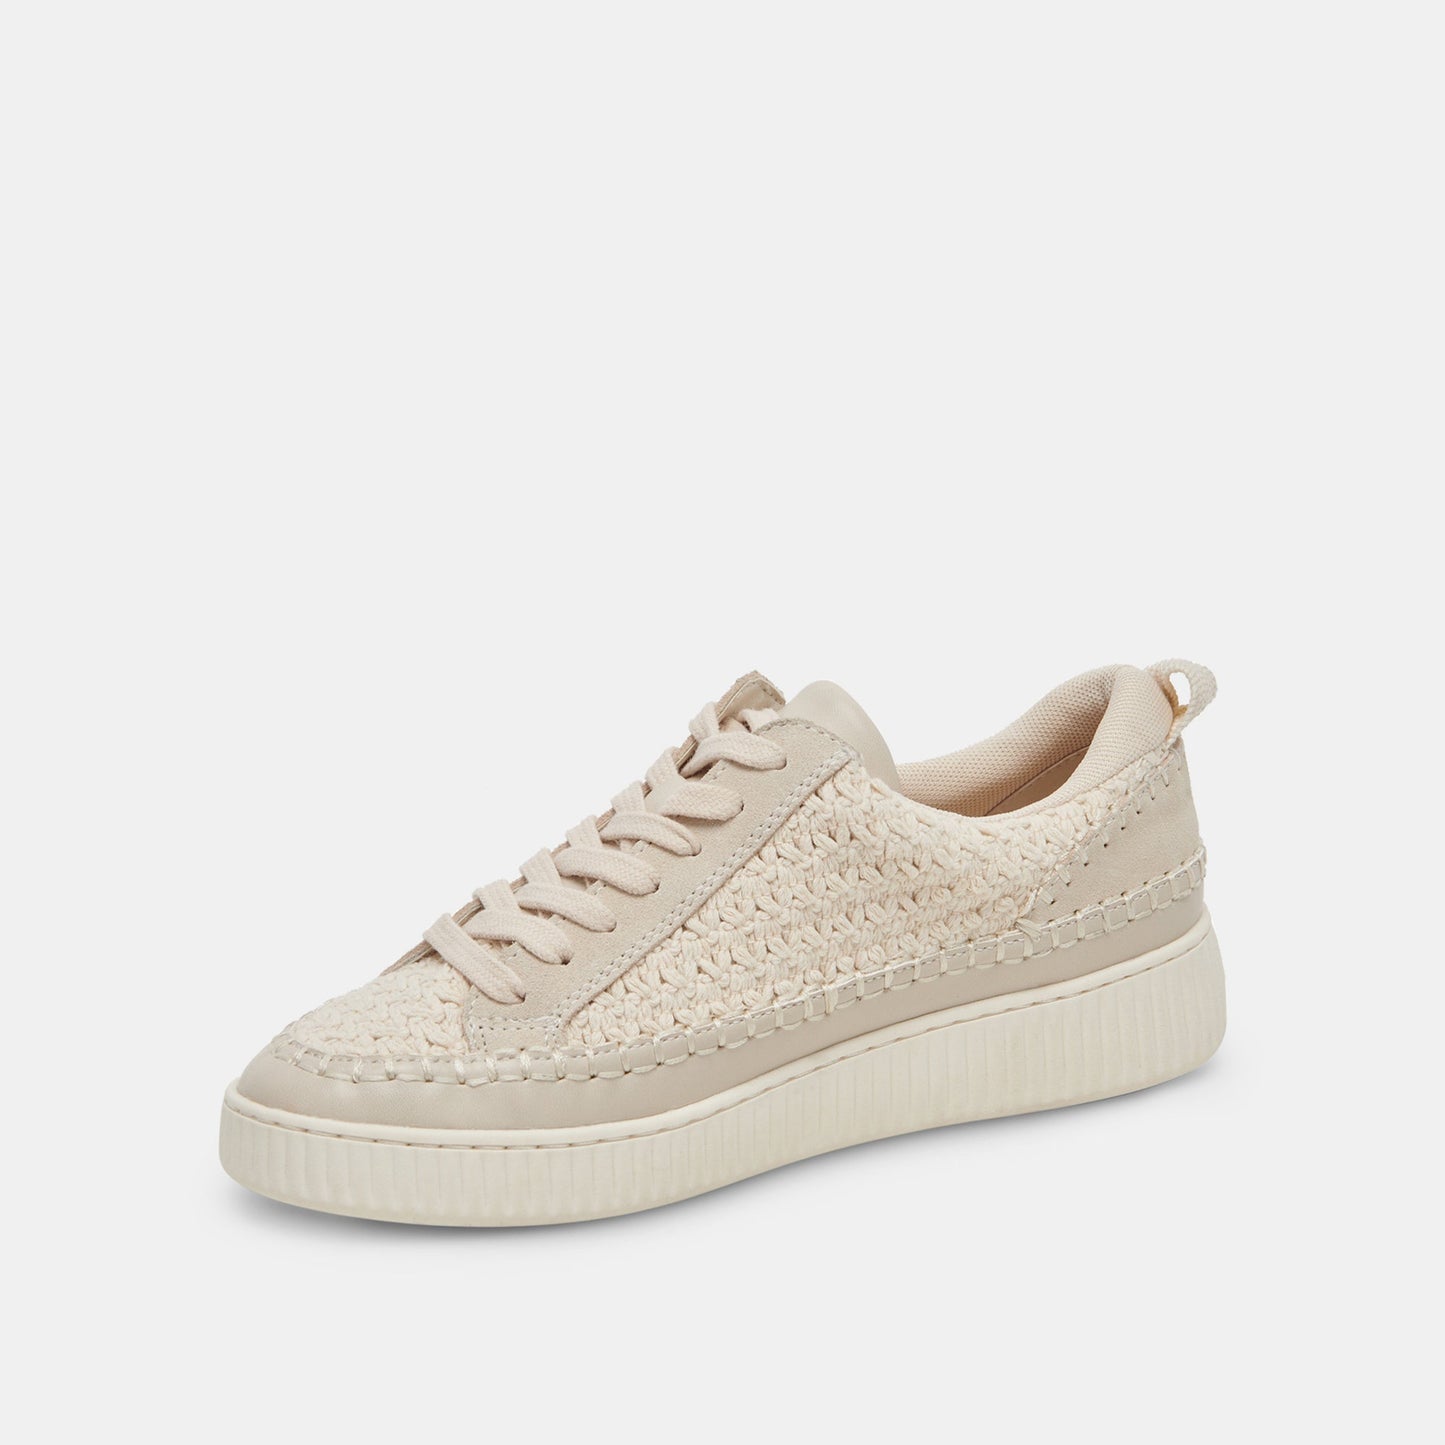 Dolce Vita “Nicona” Sneakers - Sandstone Knit